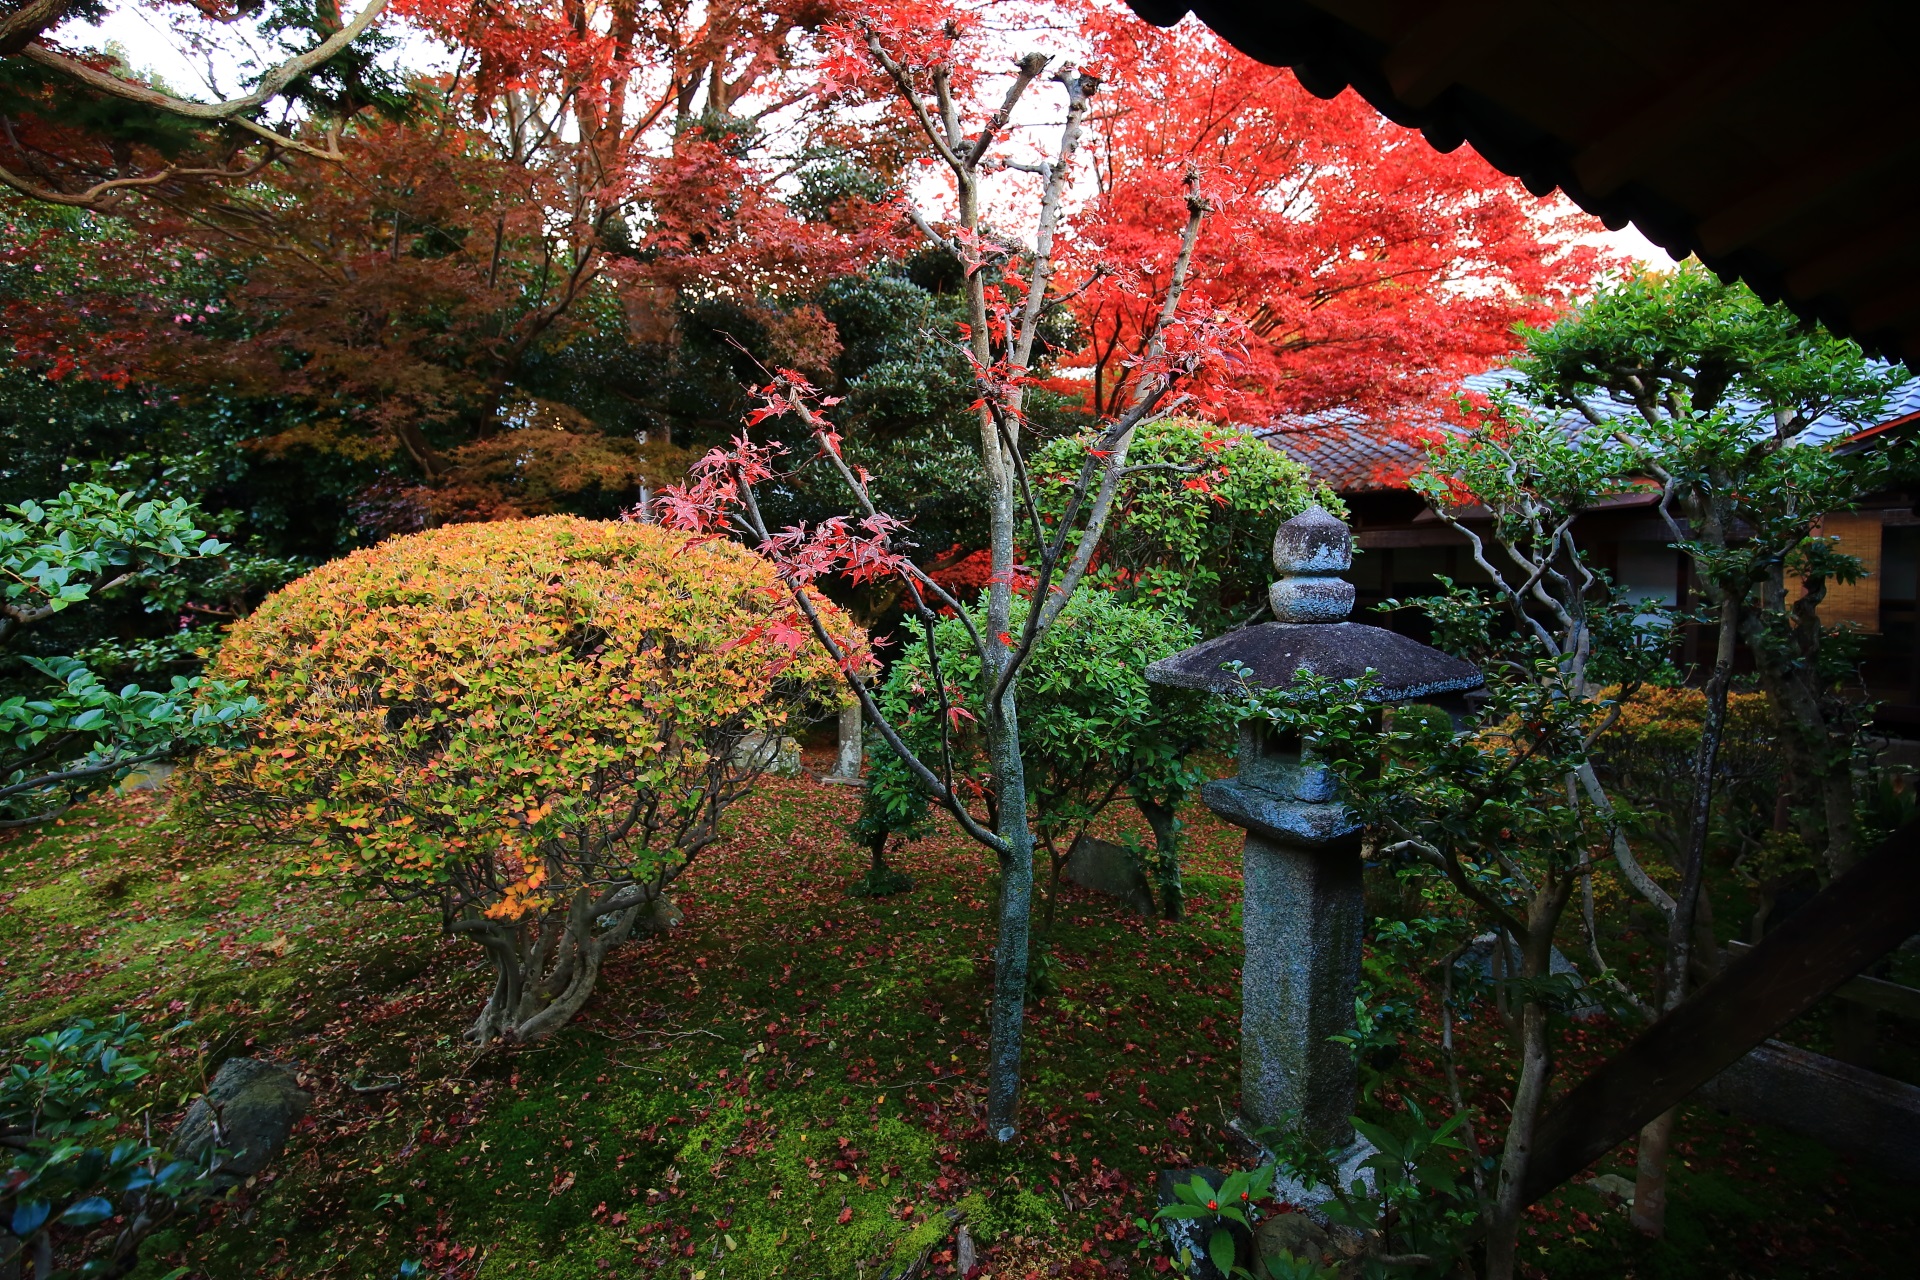 立本寺の多種多様な緑や木々の中で華やぐ鮮やかな紅葉